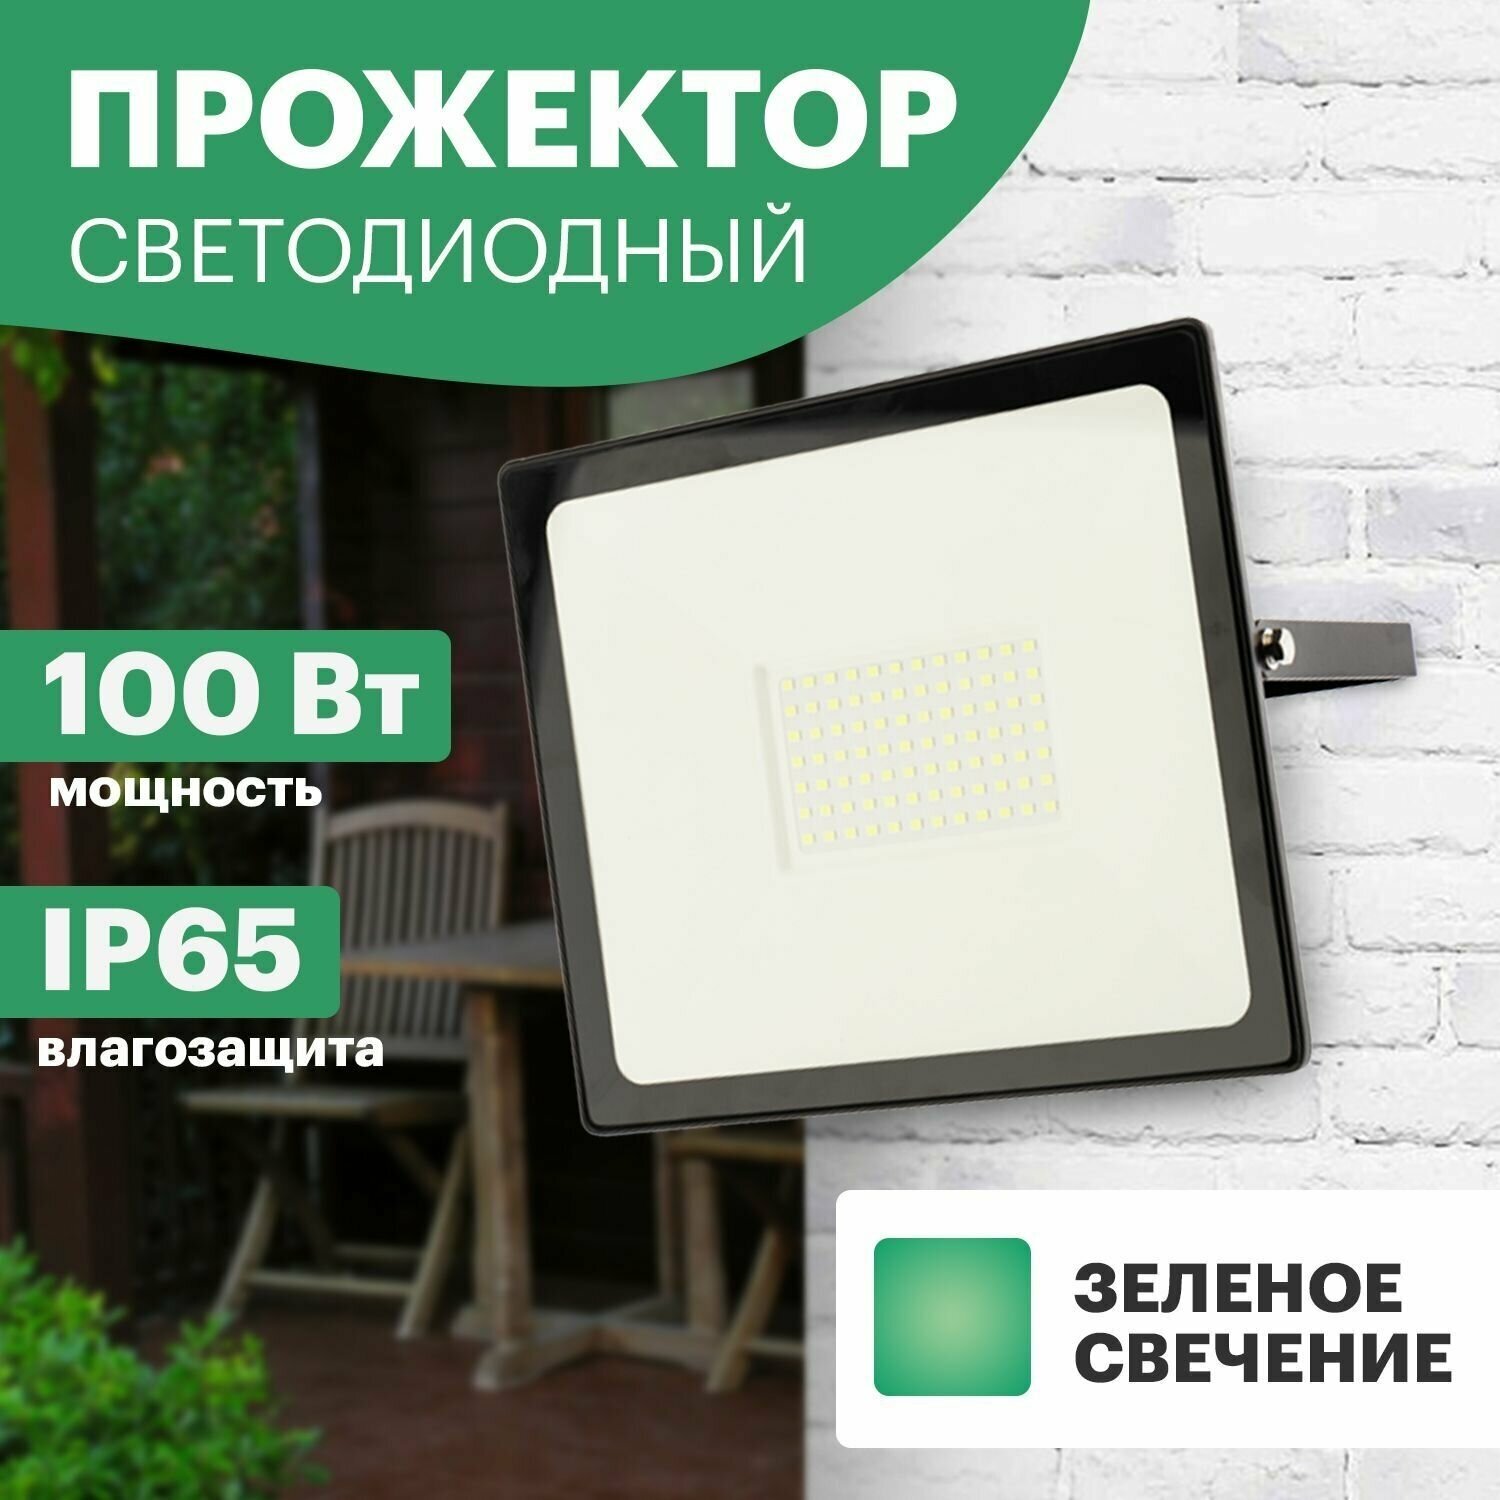 Прожектор светодиодный Rexant, 100 Вт, зеленый свет, IP65, черный